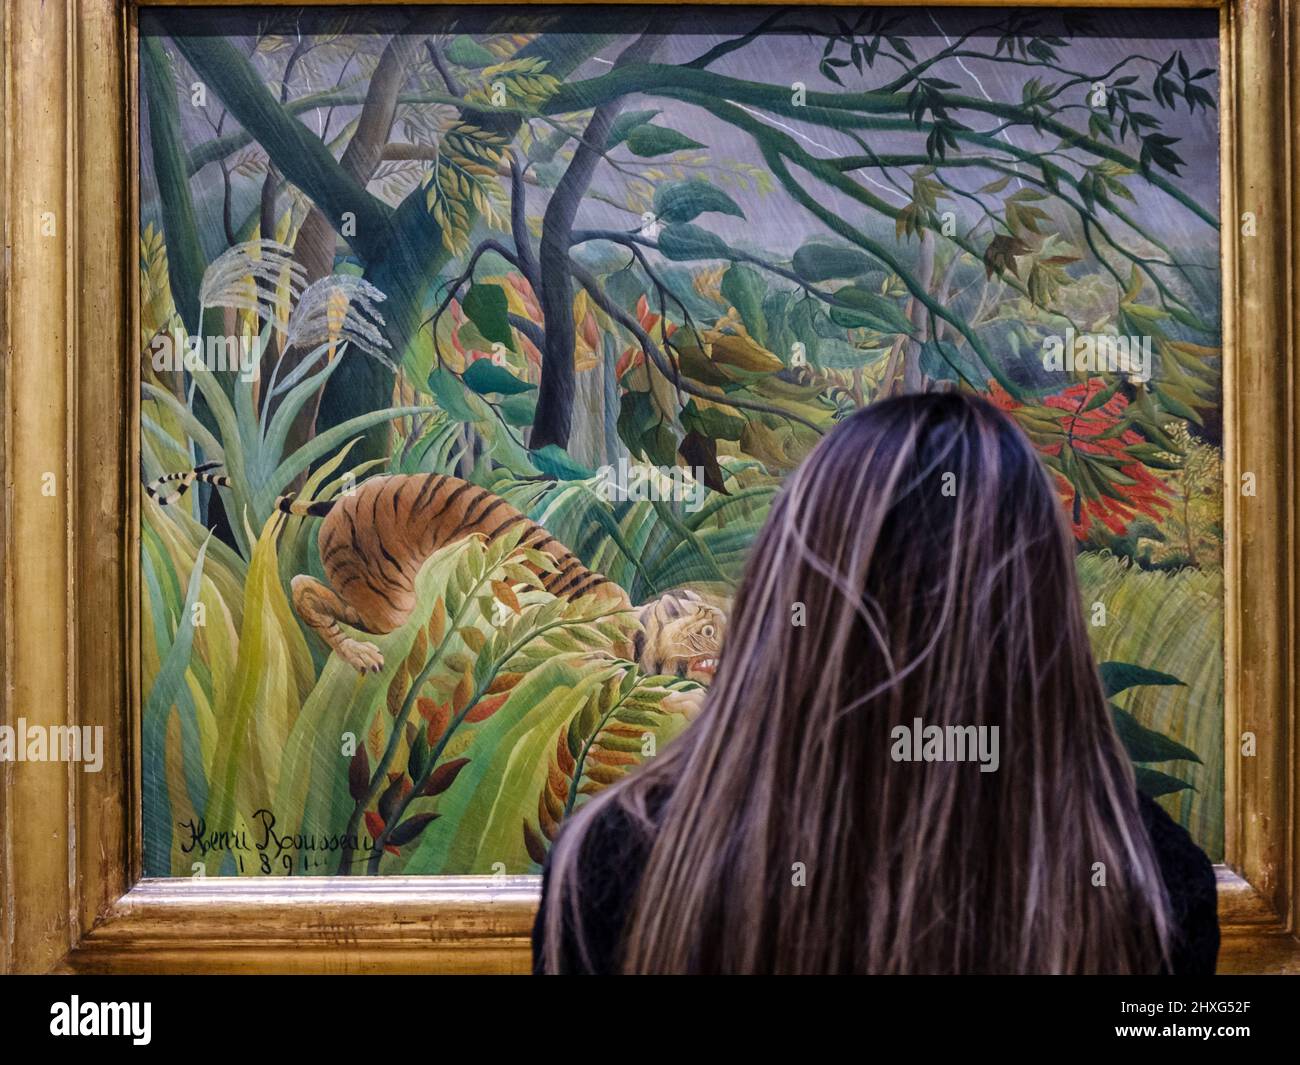 Femme aux cheveux longs devant la peinture Henri rousseau, surprise, 1891, huile sur toile, Galerie nationale, Londres, Angleterre, Grande-Bretagne. Banque D'Images